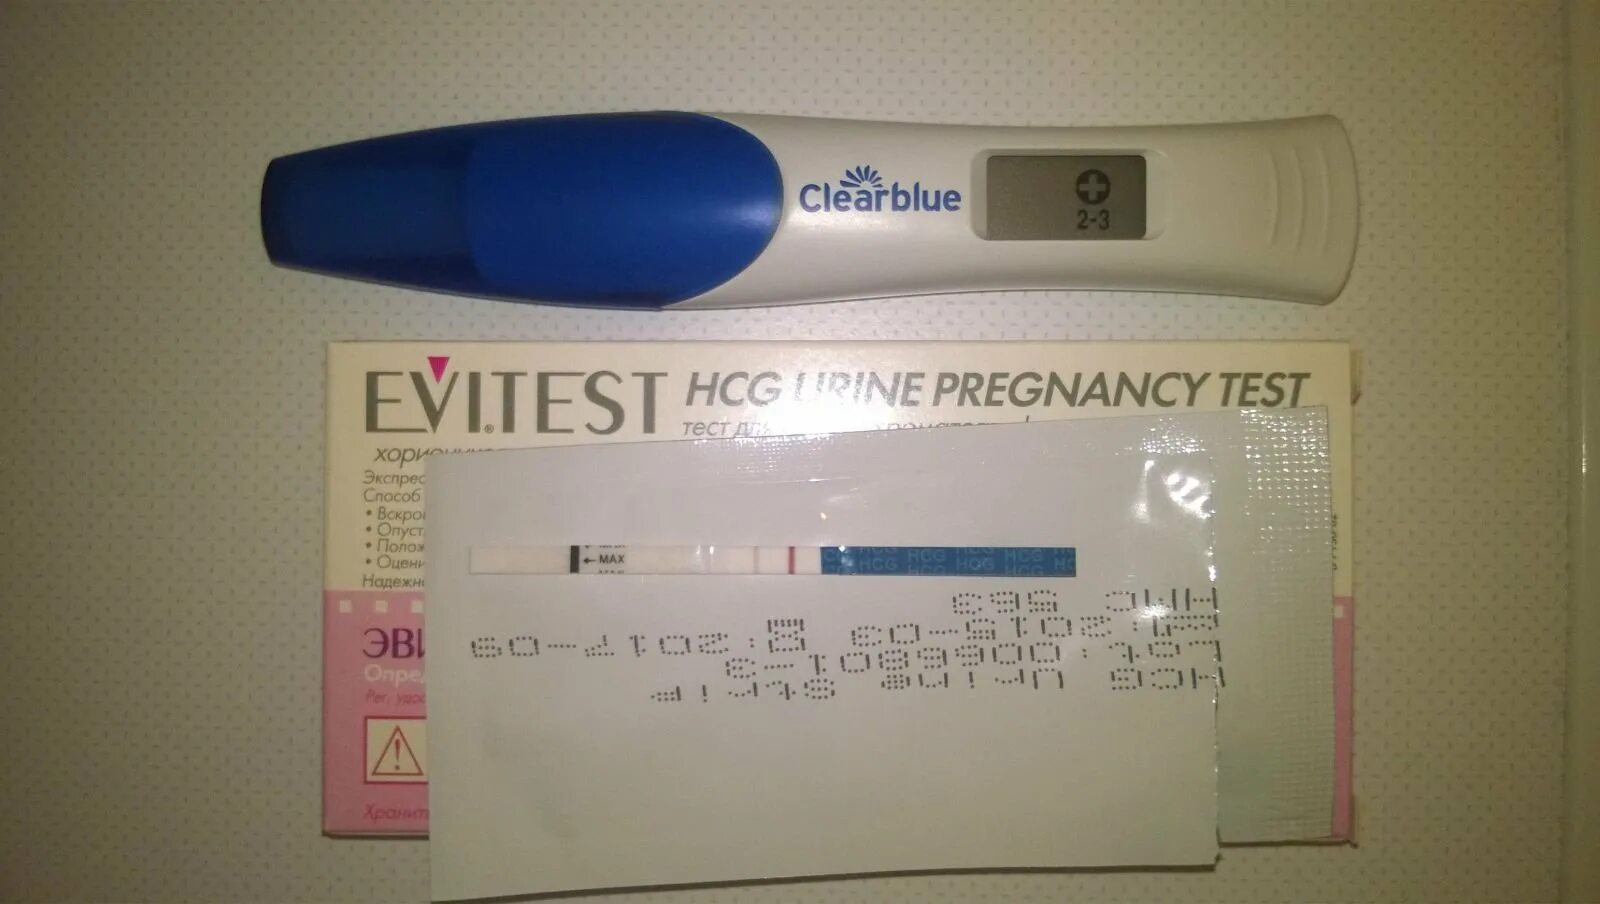 5 недель беременности тест покажет. 2 Недели беременности тест покажет. Тест на беременность 1-2 недели. Clearblue 3+. Электронный тест на беременность 7 недель.